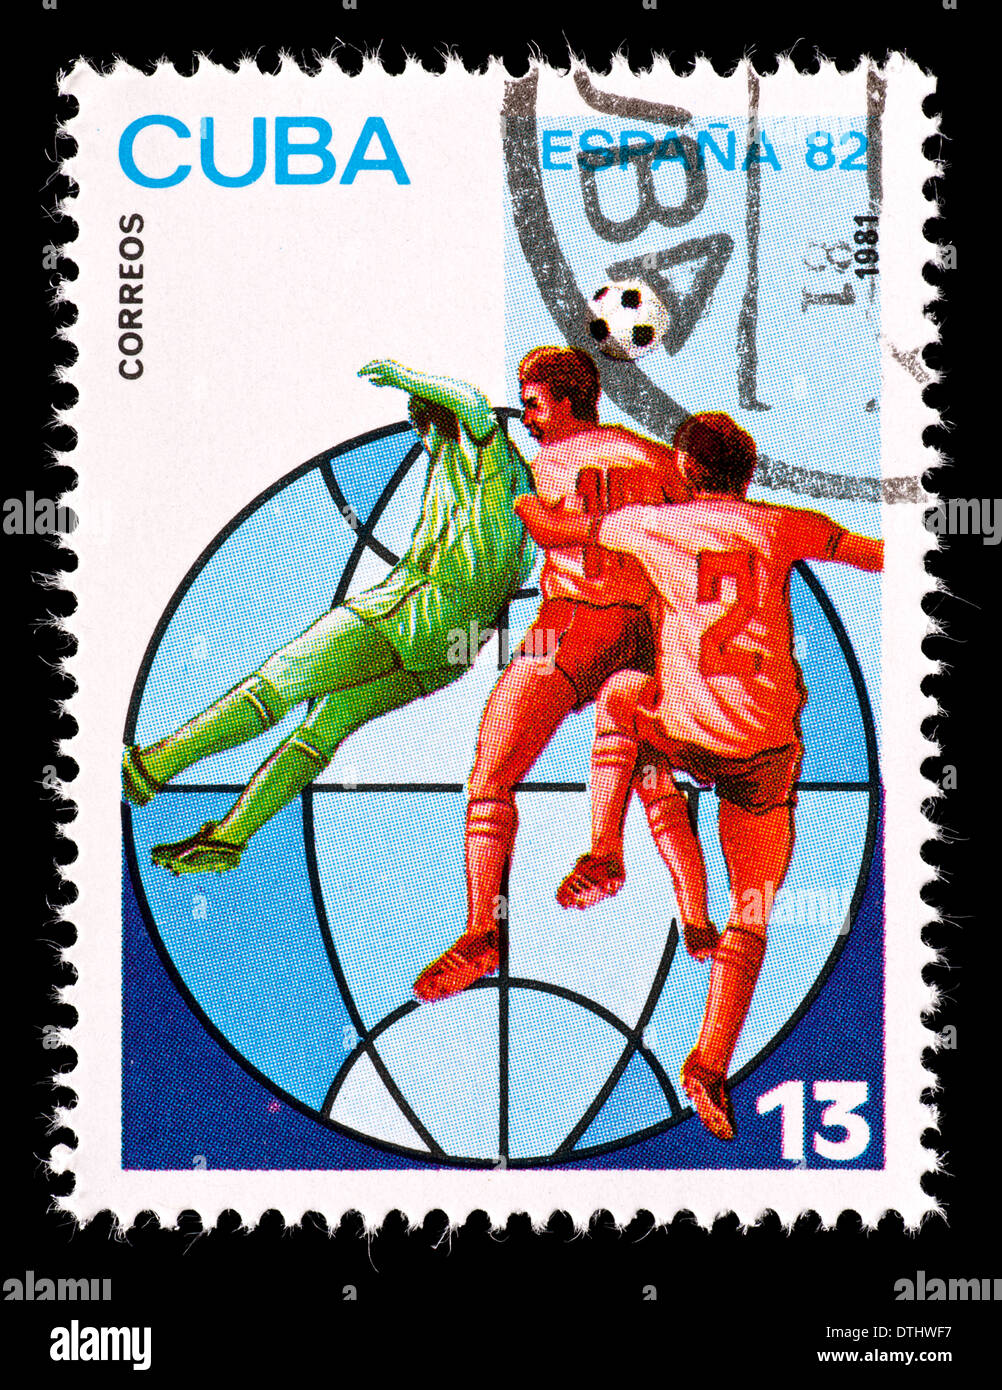 Timbre-poste de Cuba représentant trois joueurs de football, émis pour la Coupe du Monde 1992 en Espagne. Banque D'Images